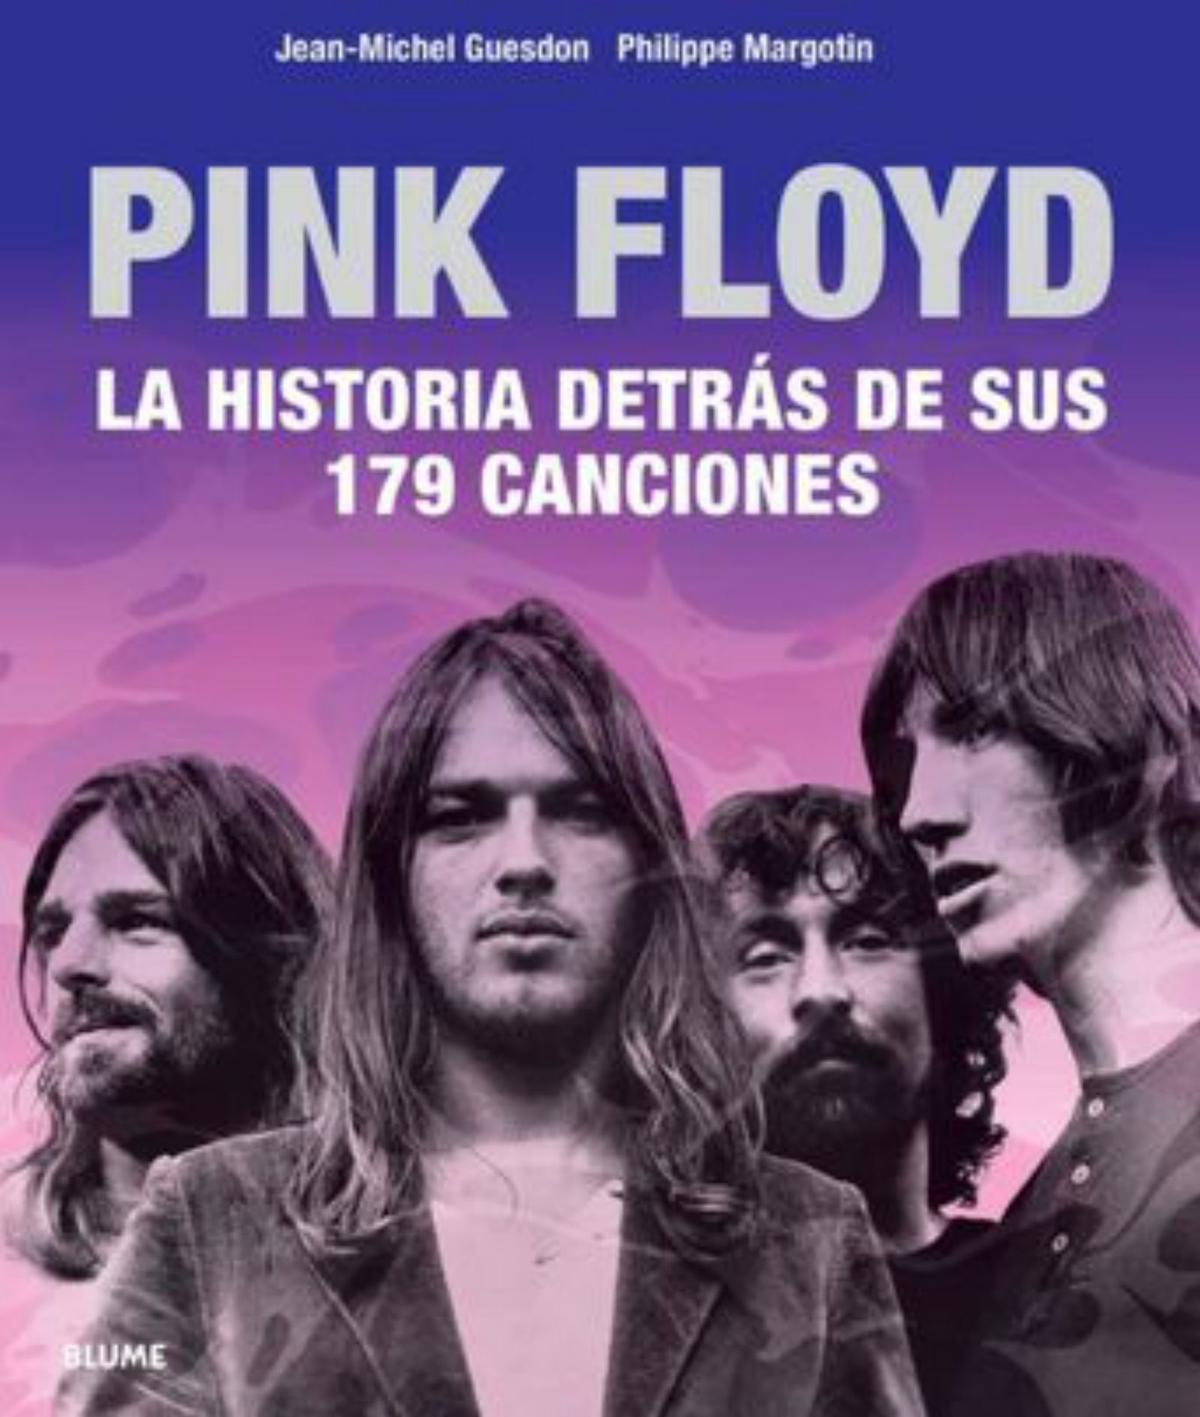 Pink Floyd. La historia detrás de sus 179 canciones | Jean-Michel Guesdon y Philippe Margotin. Blume. 592 páginas. 49 euros.